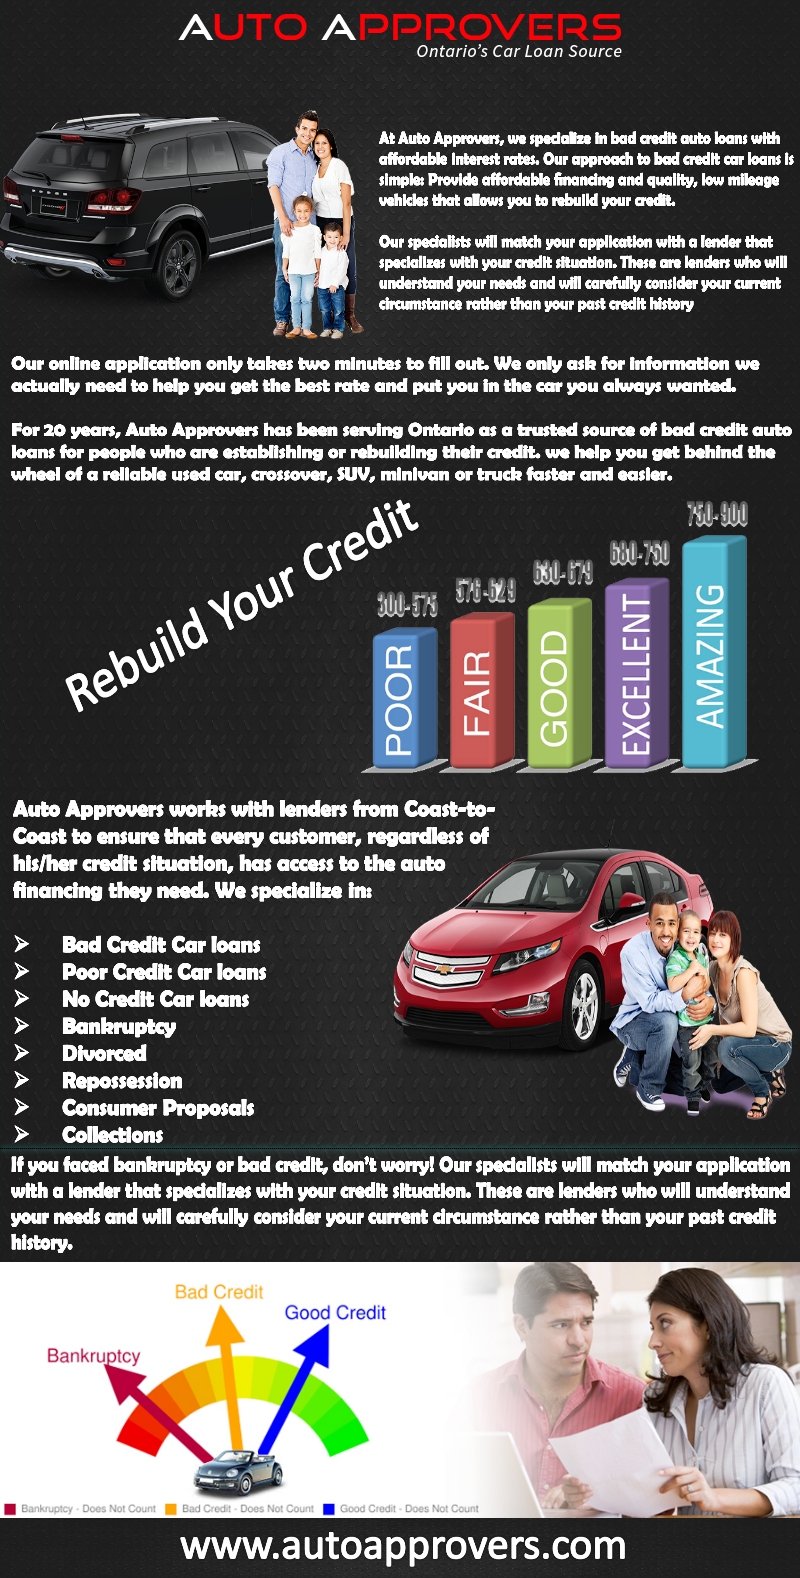 Poor_Credit_Car_loans